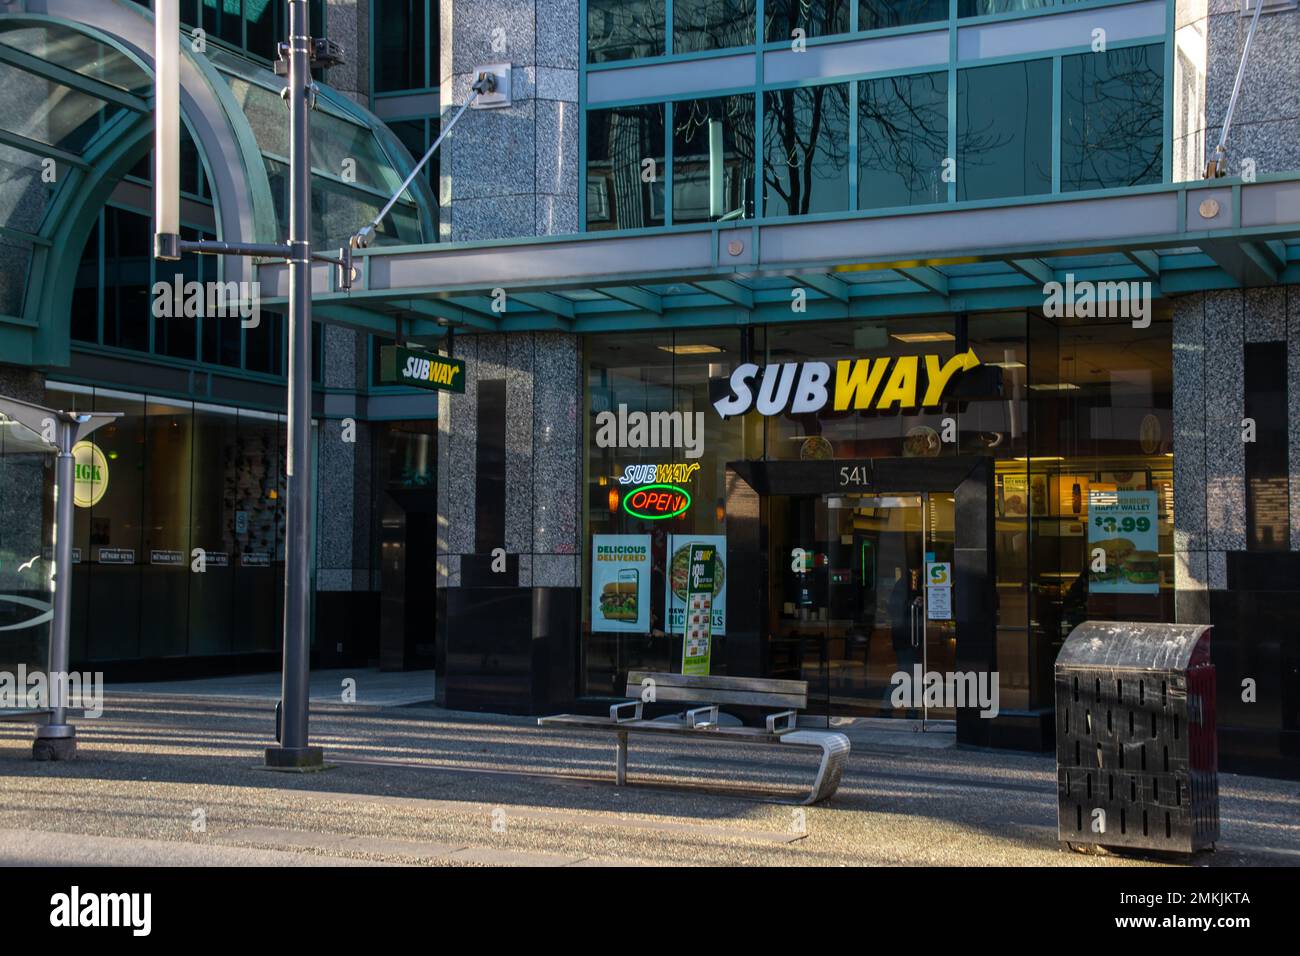 Storefront della metropolitana nel centro di Vancouver. Subway è un fast food americano in franchising specializzato in panini sottomarini (sub), involtini e bevande Foto Stock